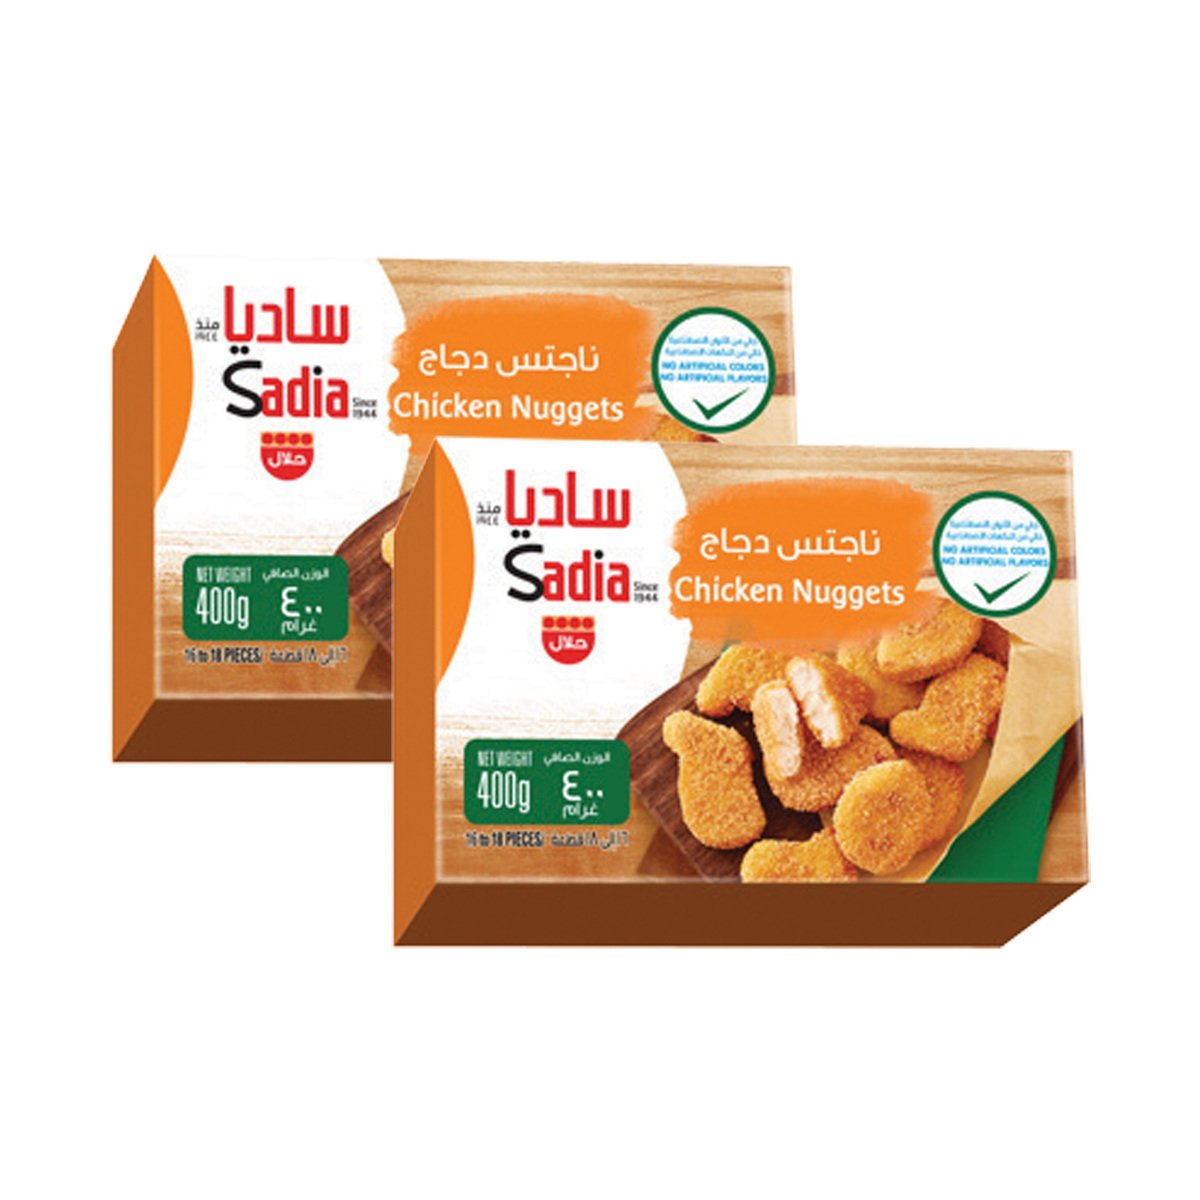 Buy Sadia Chicken Nuggets Value Pack 2 x 400 g Online at Best Price | Nuggets | Lulu UAE in UAE